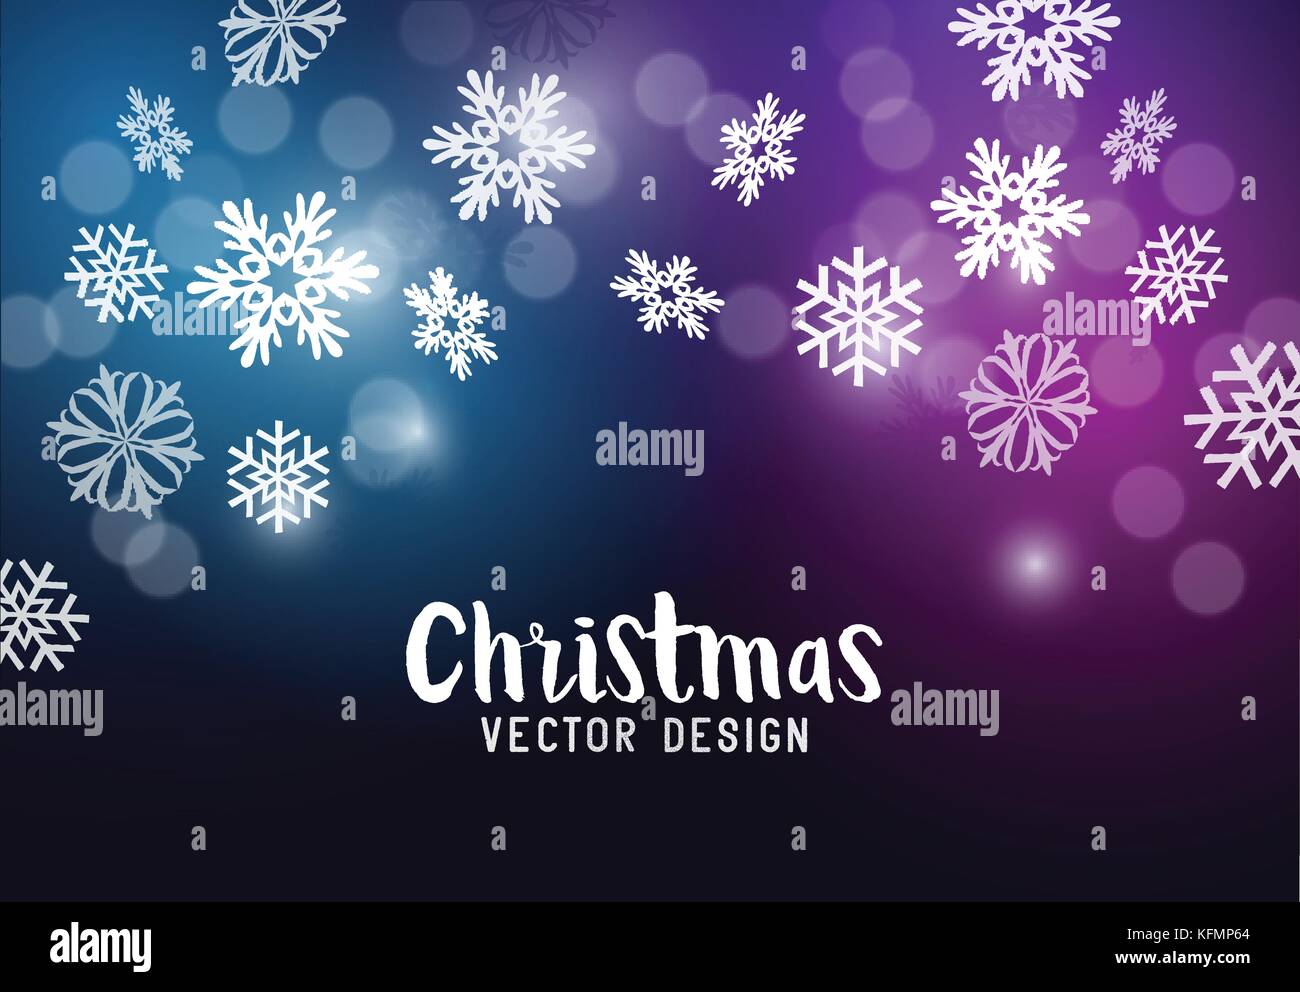 Weihnachten Hintergrund mit fallenden Schneeflocken. Vector Illustration. Stock Vektor